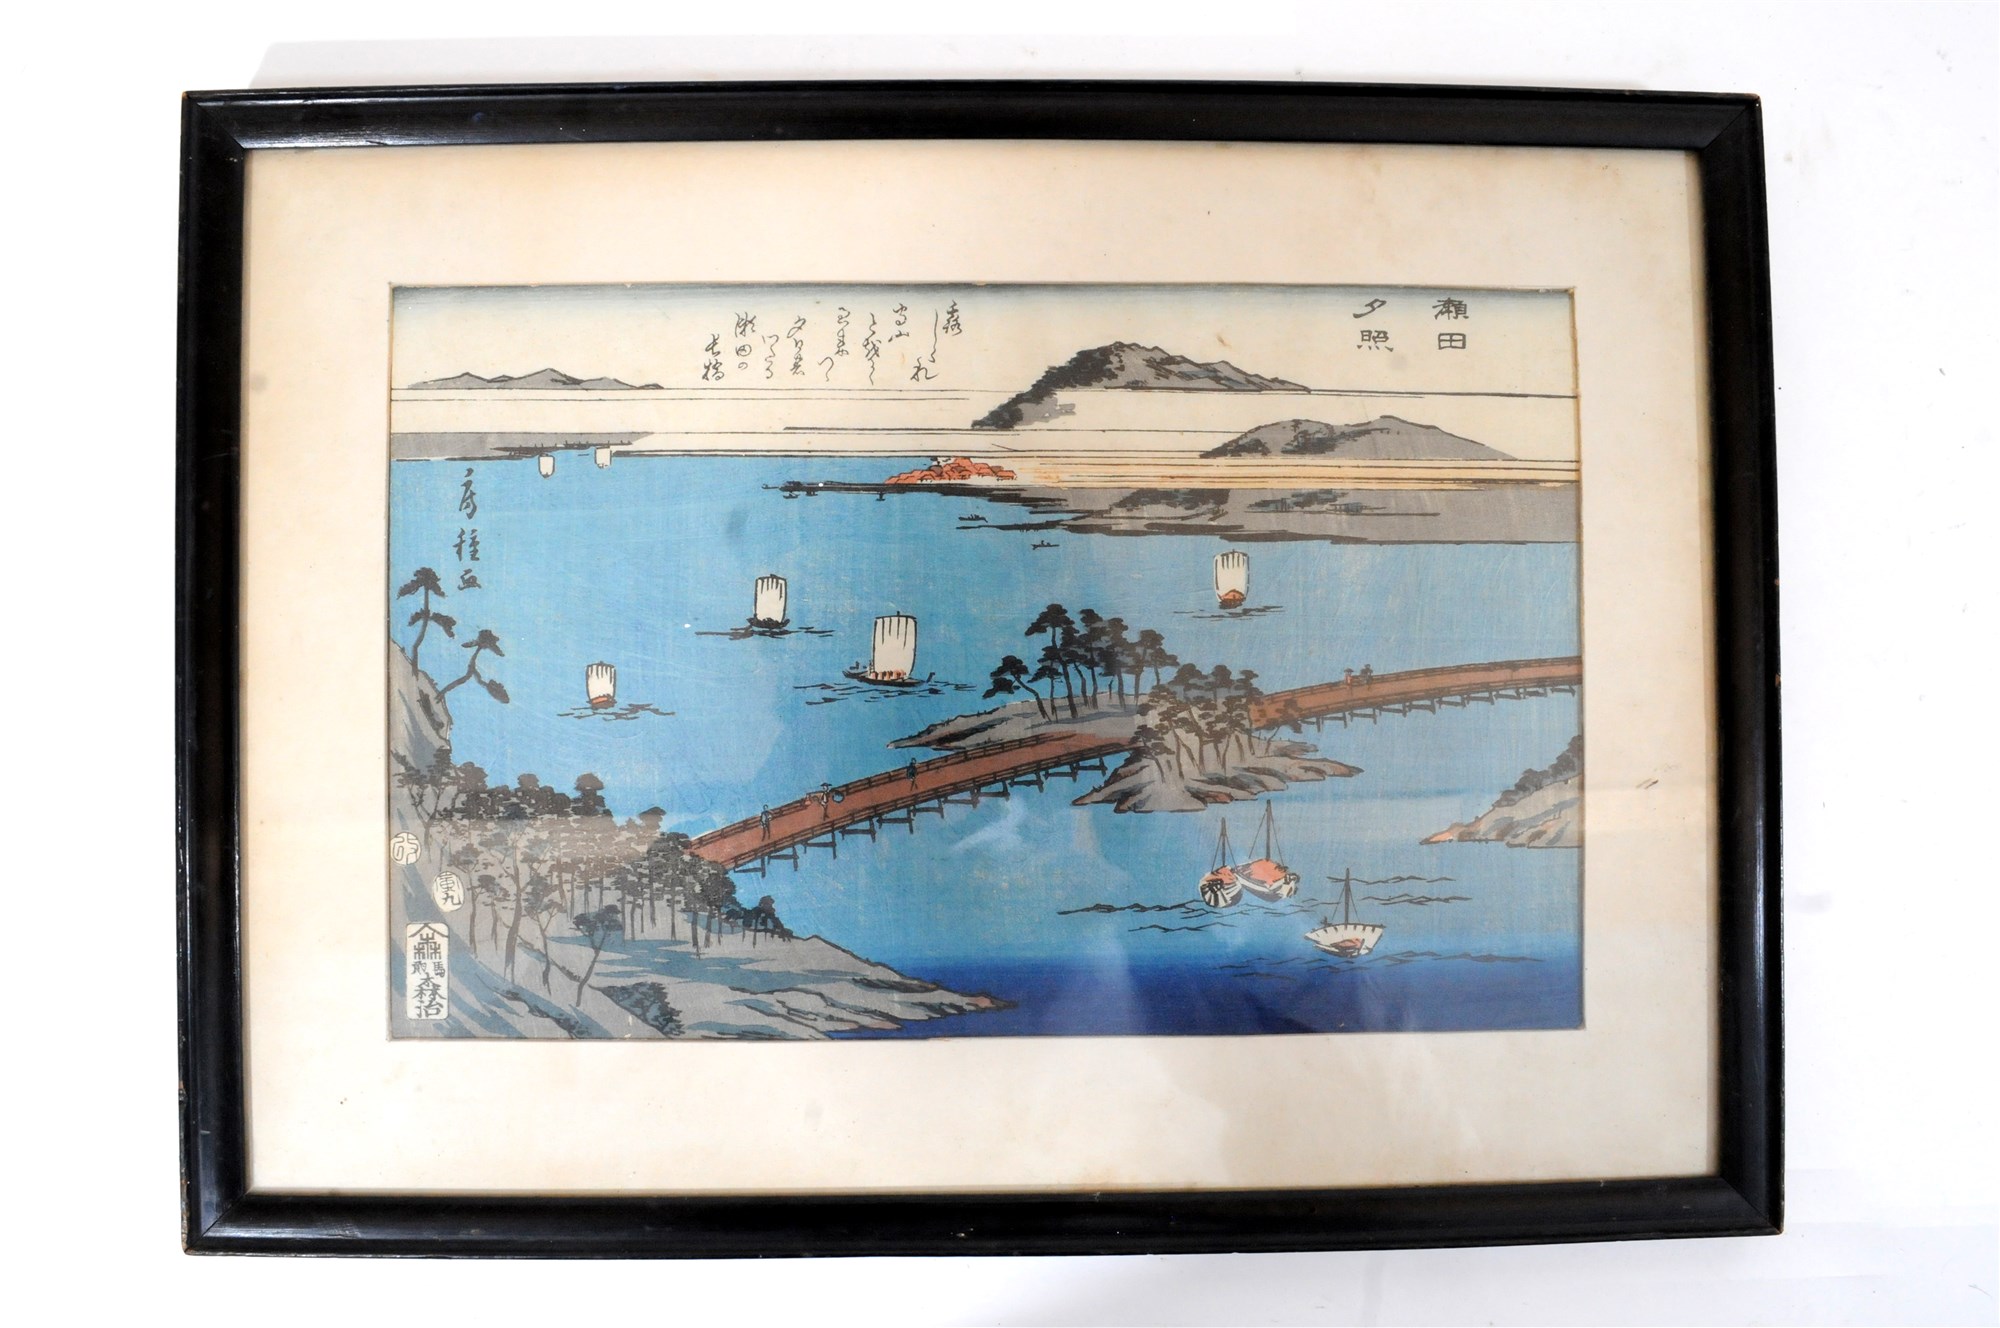 A Japanese woodblock print